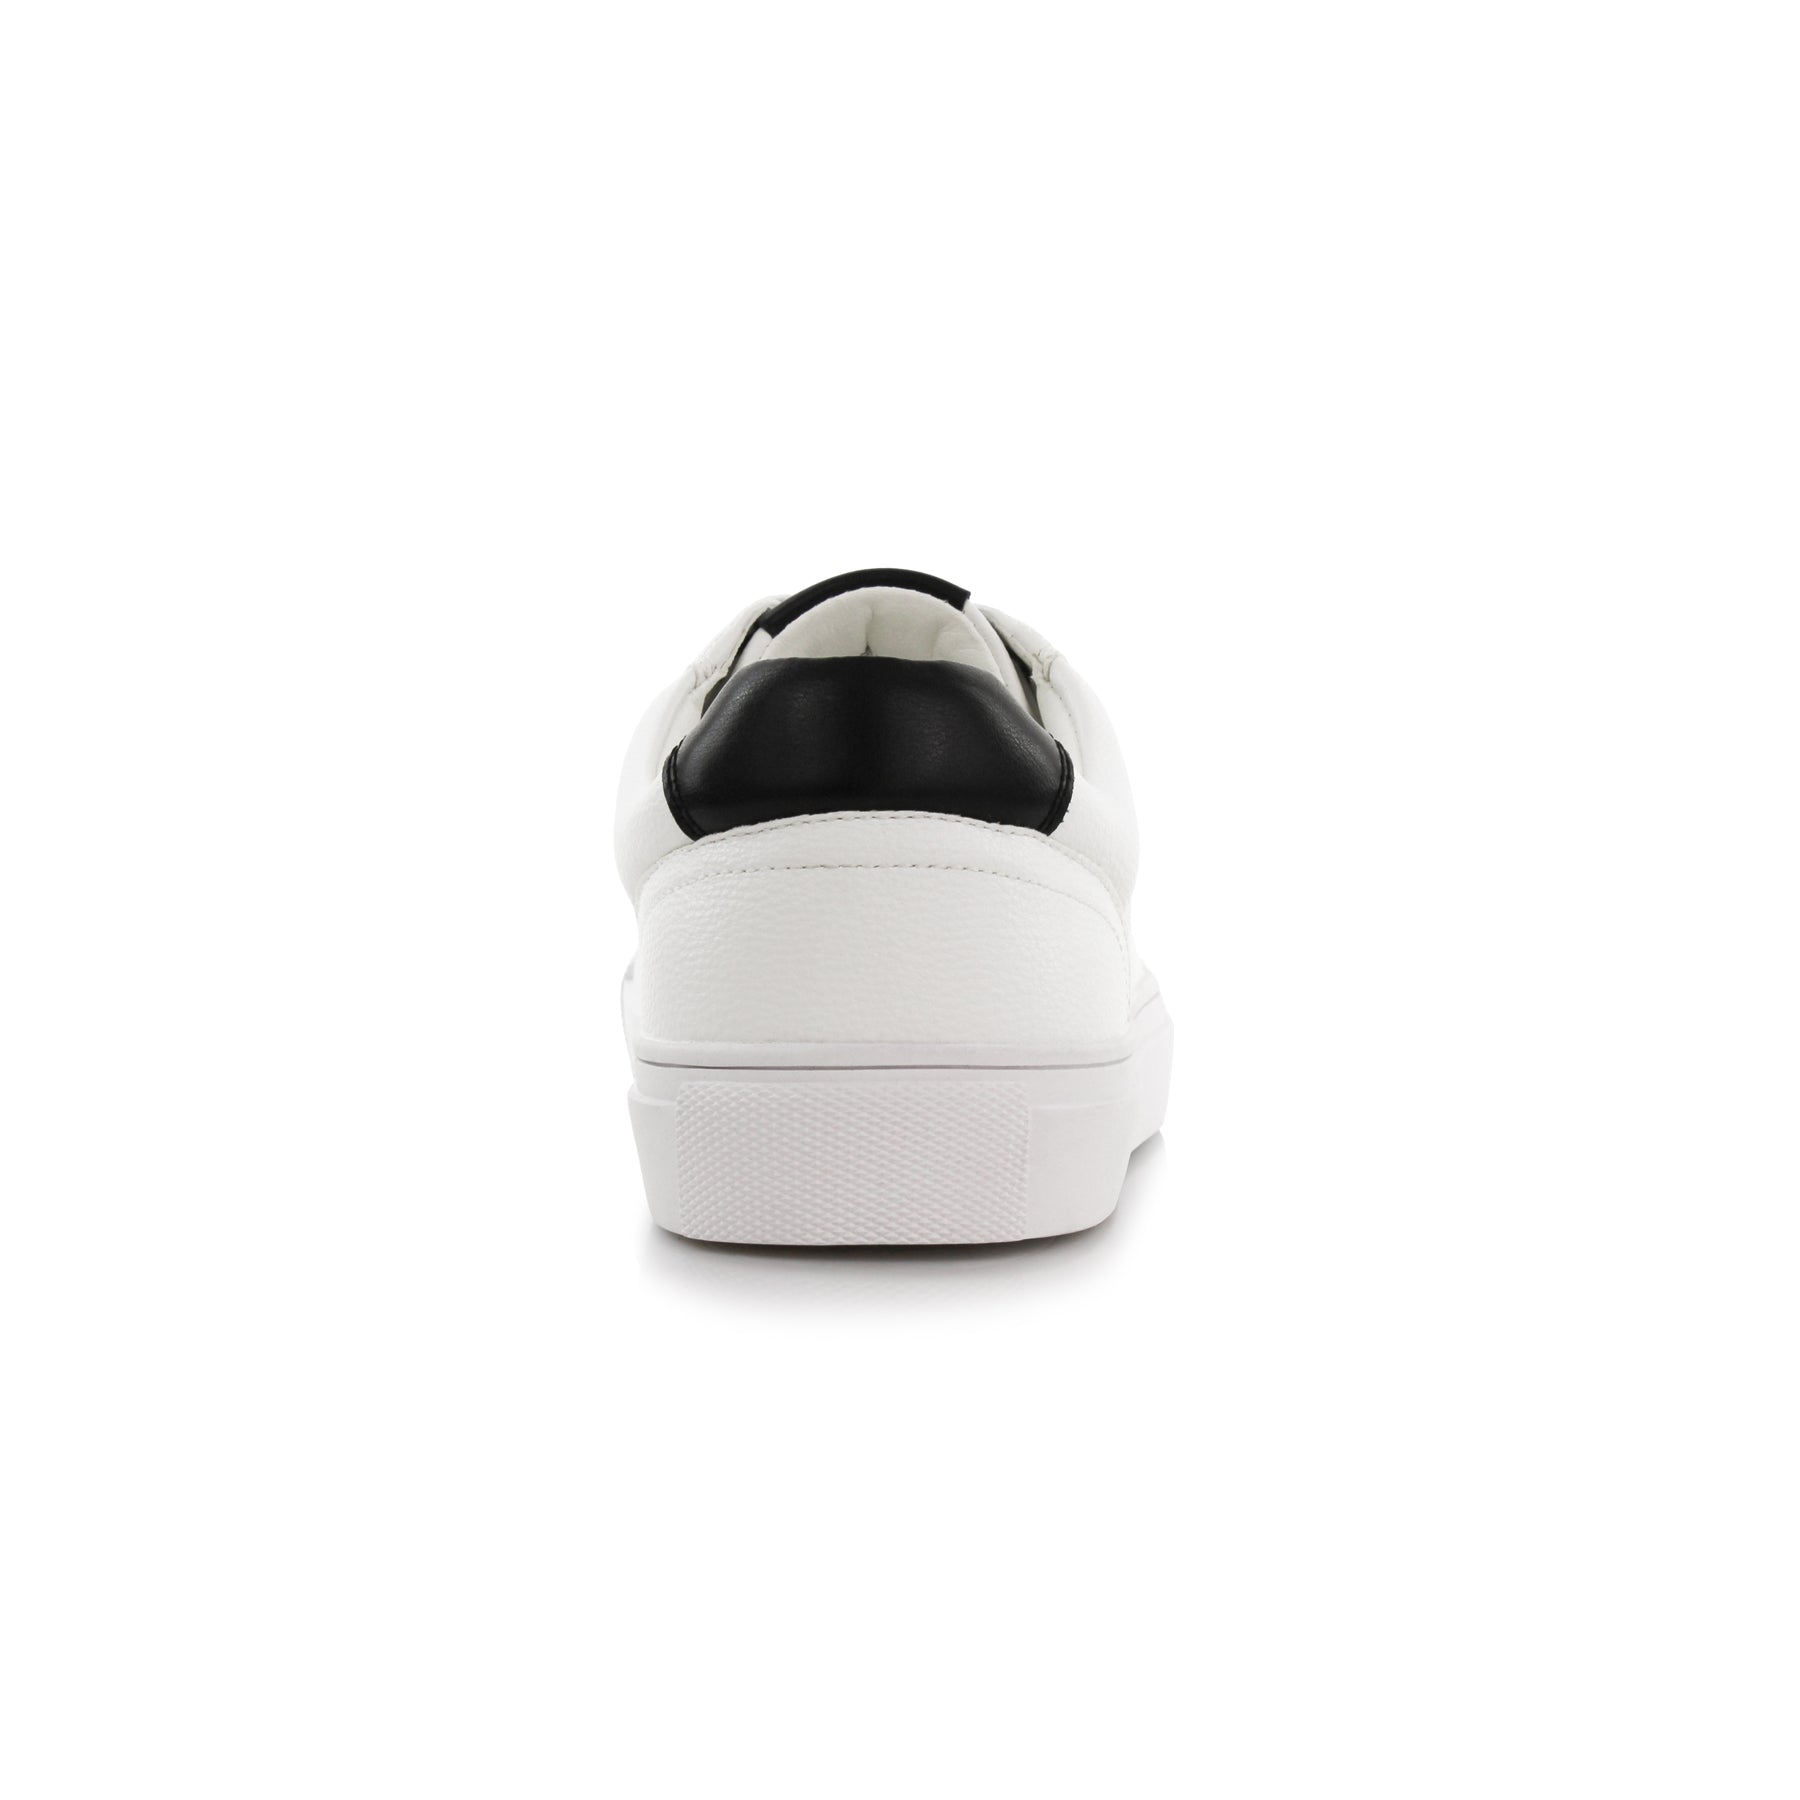 Low-Top Sneakers | Daniel by Ferro Aldo | Conal Footwear | Back Angle View